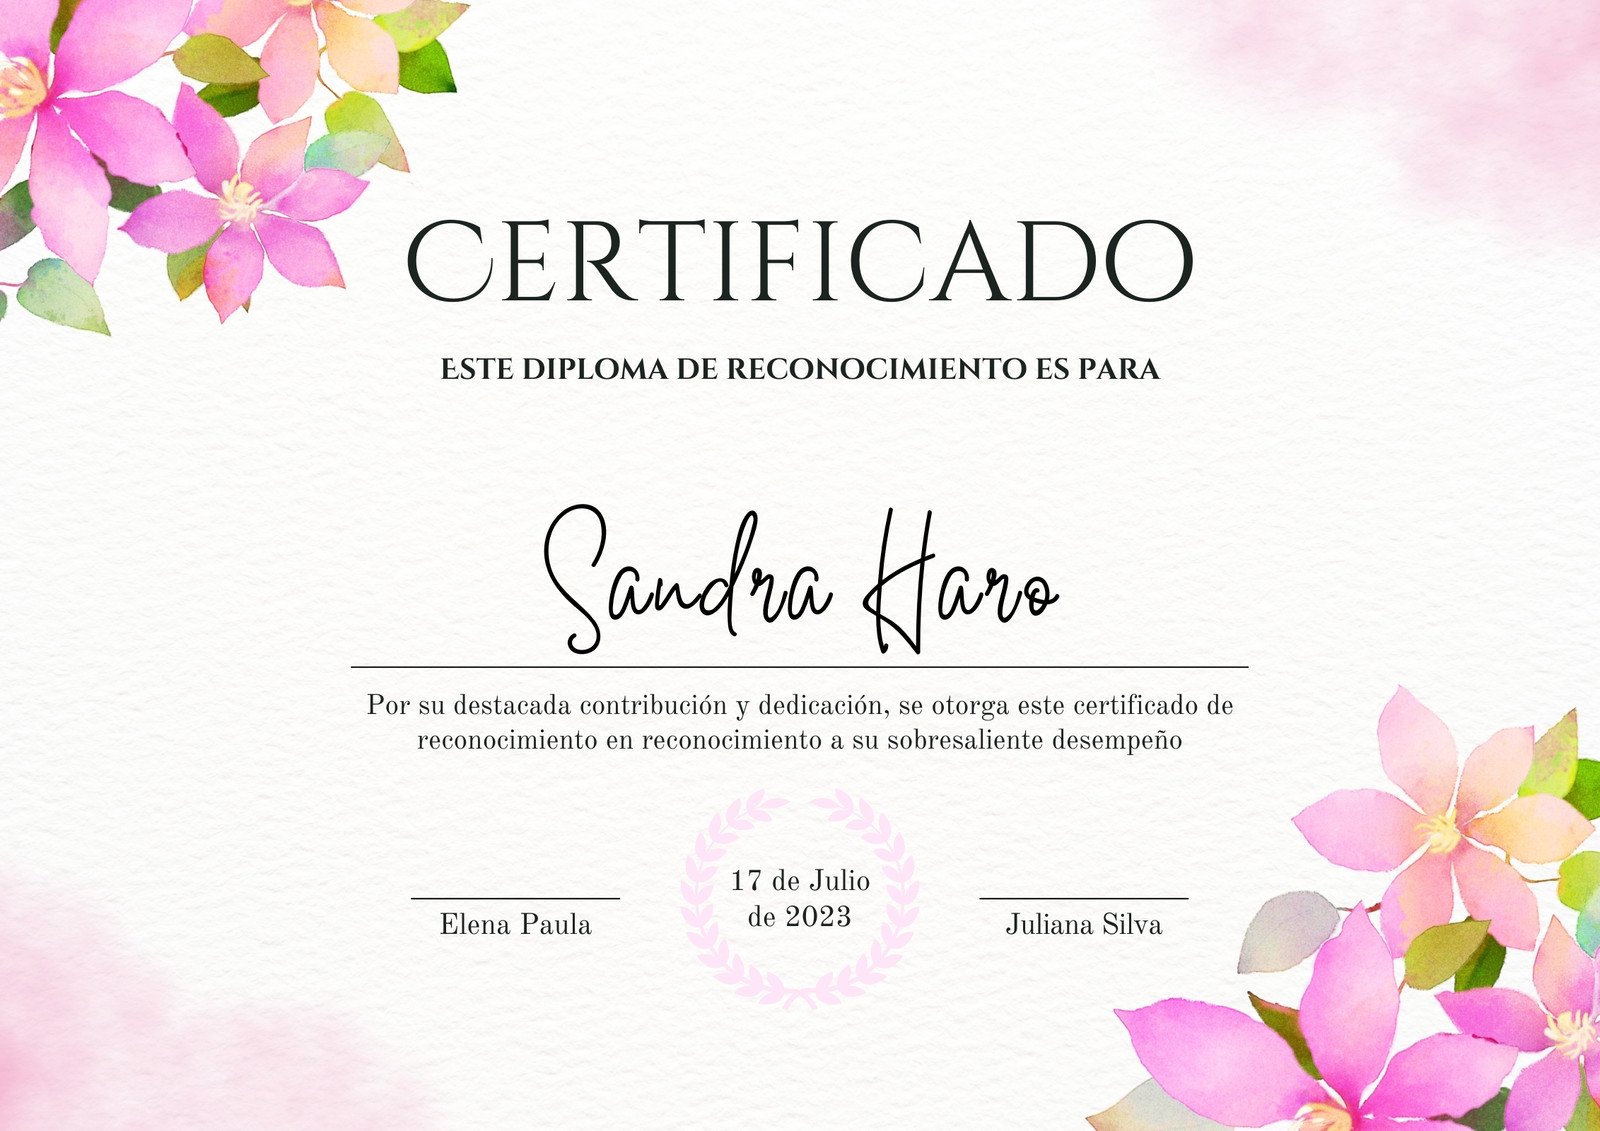 Certificado de reconocimiento watercolor aesthetic rosa